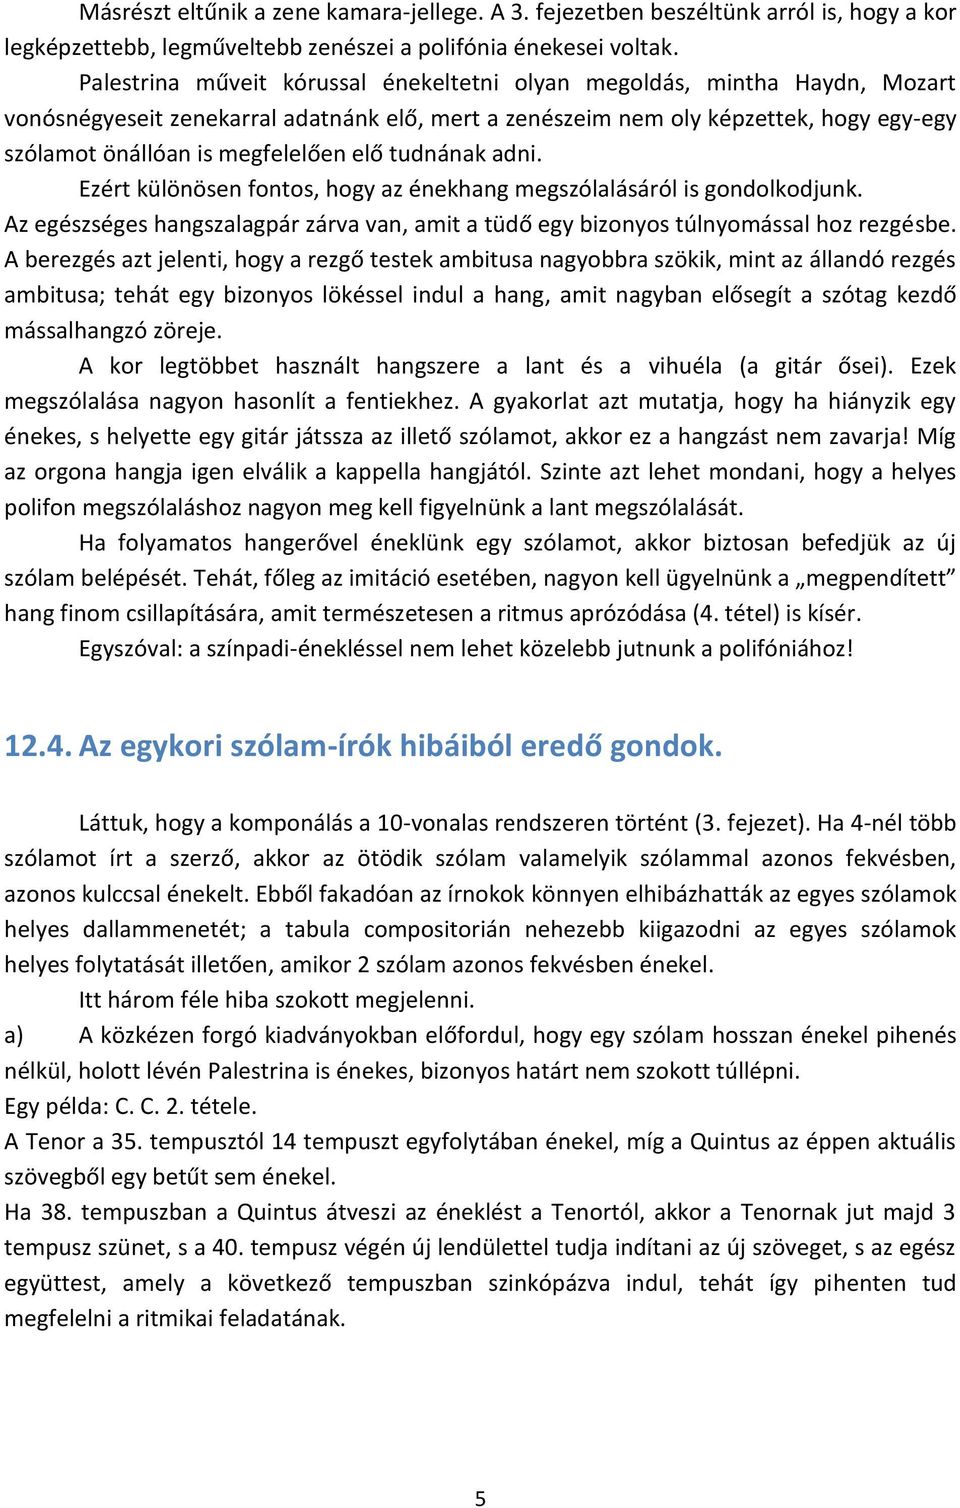 G. P. da Palestrina Stílusa - PDF Ingyenes letöltés